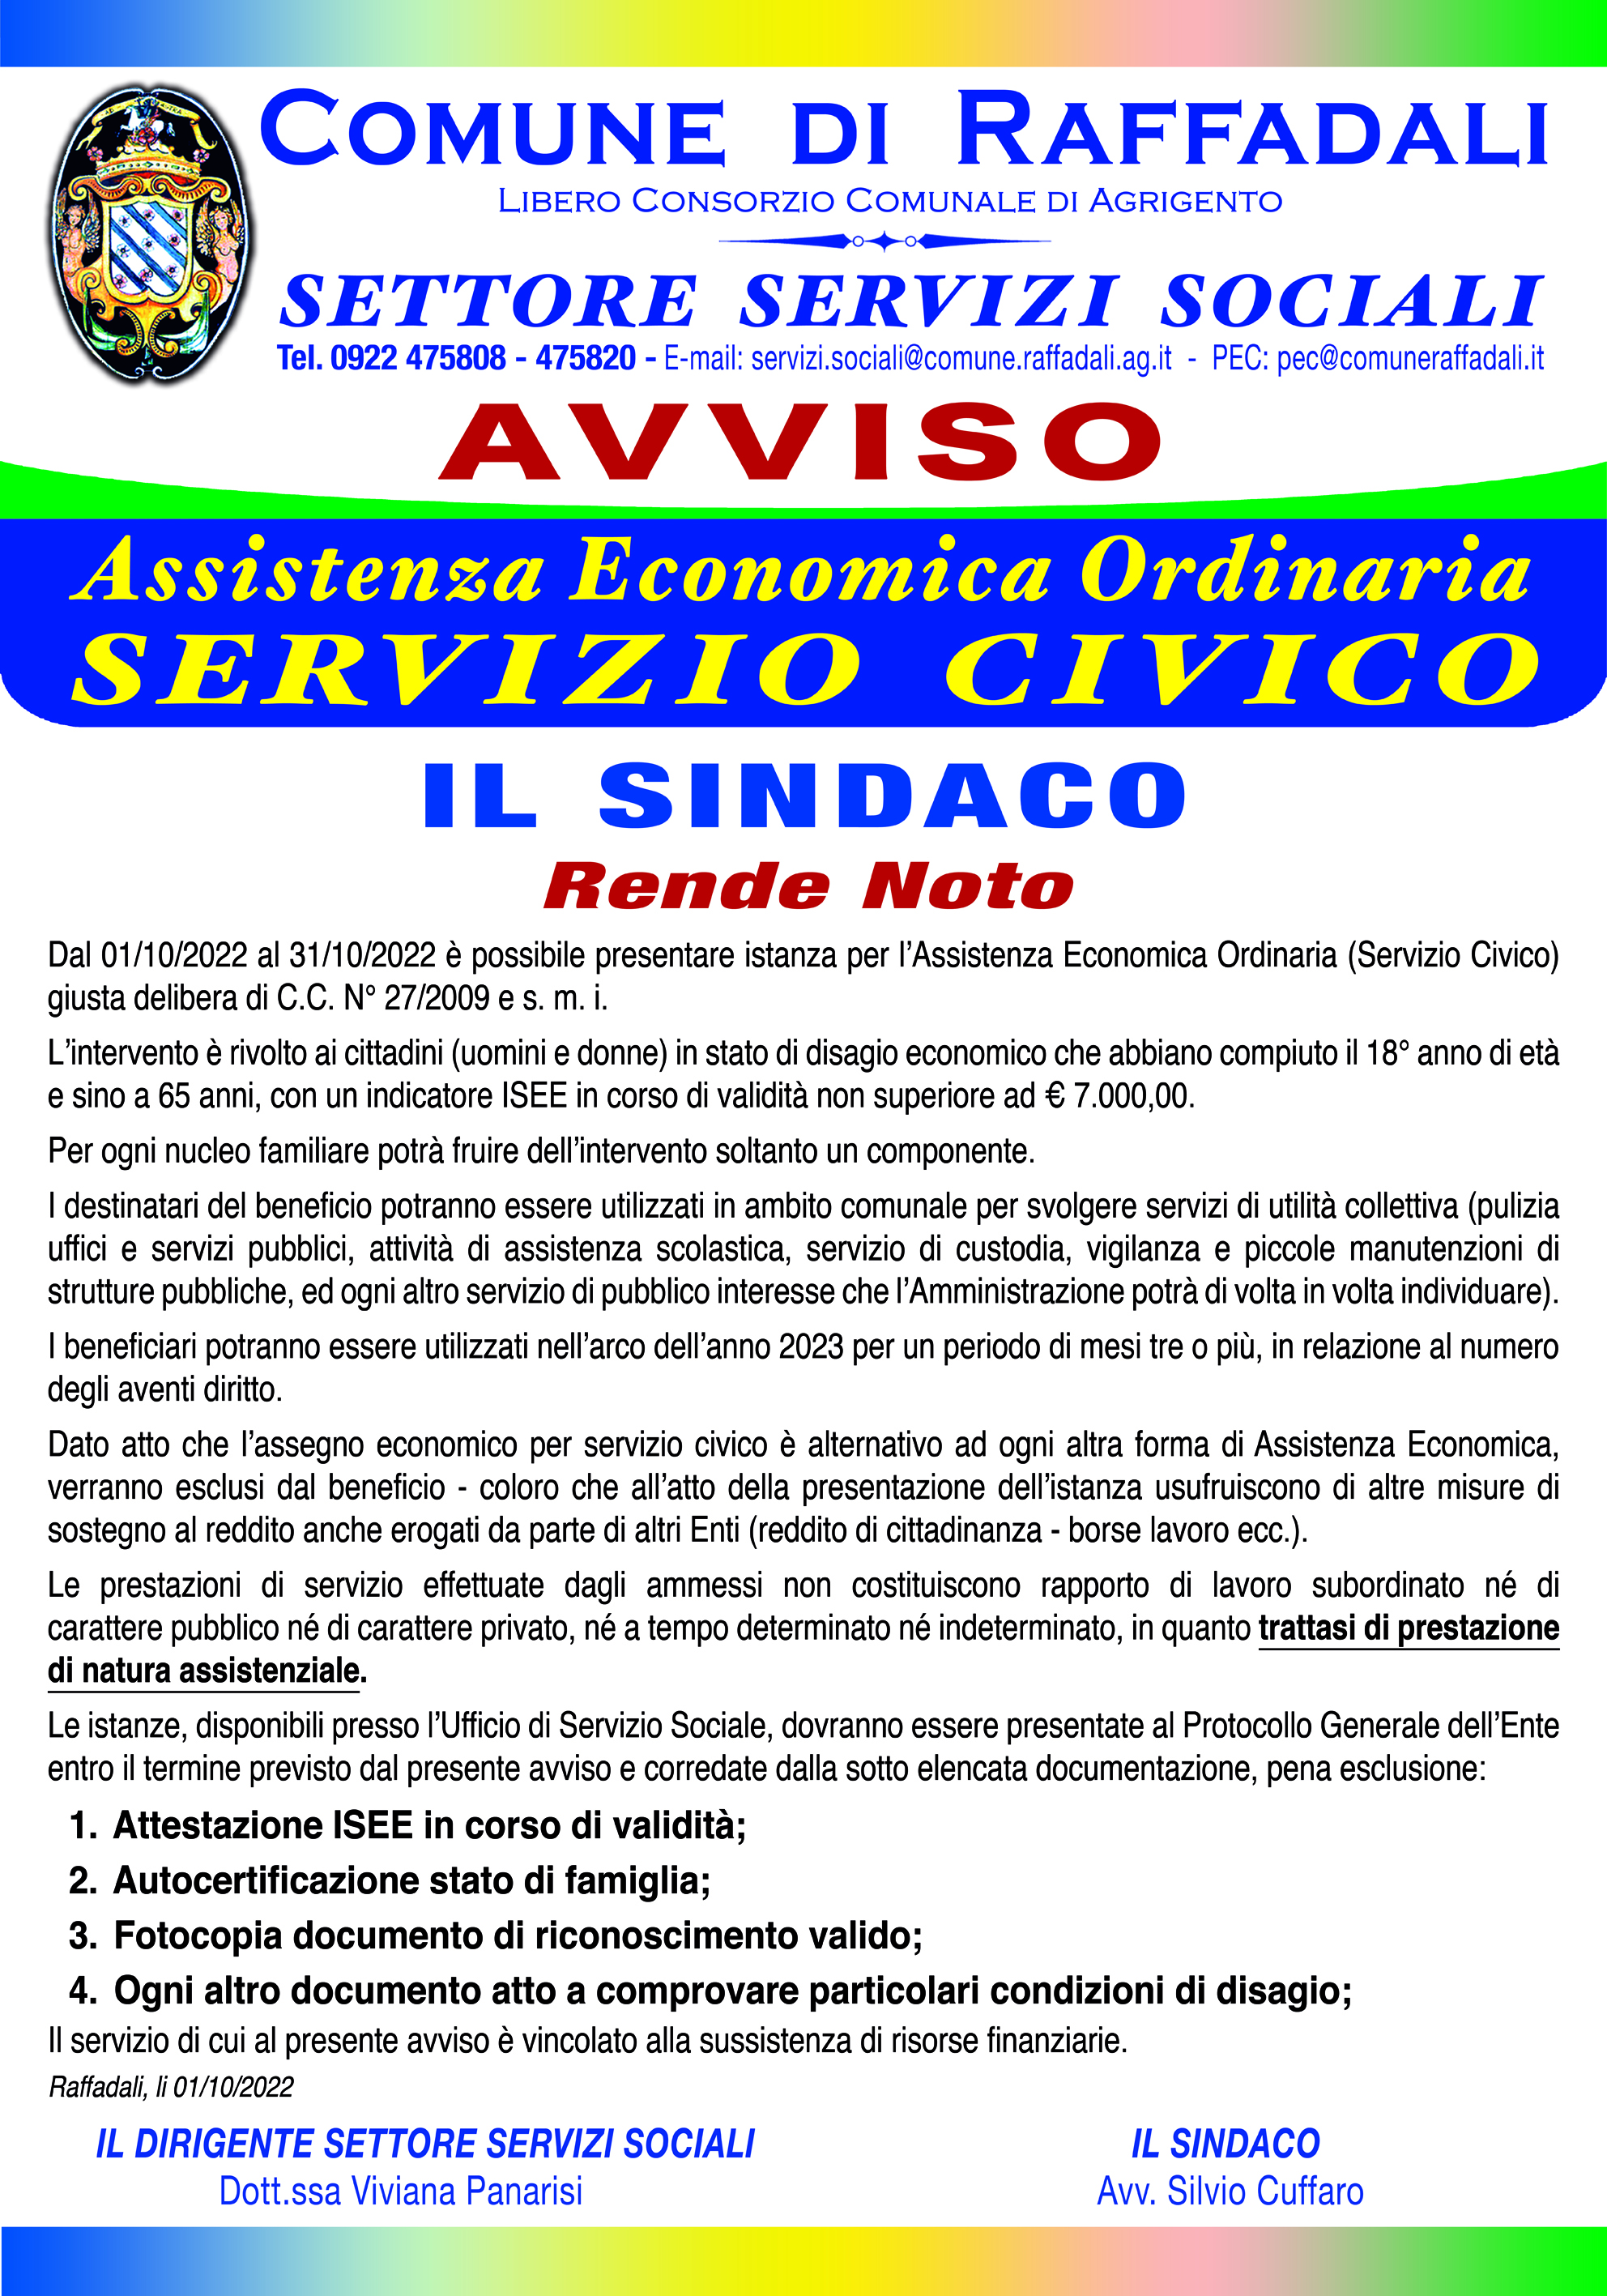 f/cms_eventi_summernote/2022/9/24476_man__servizio_civico.jpg